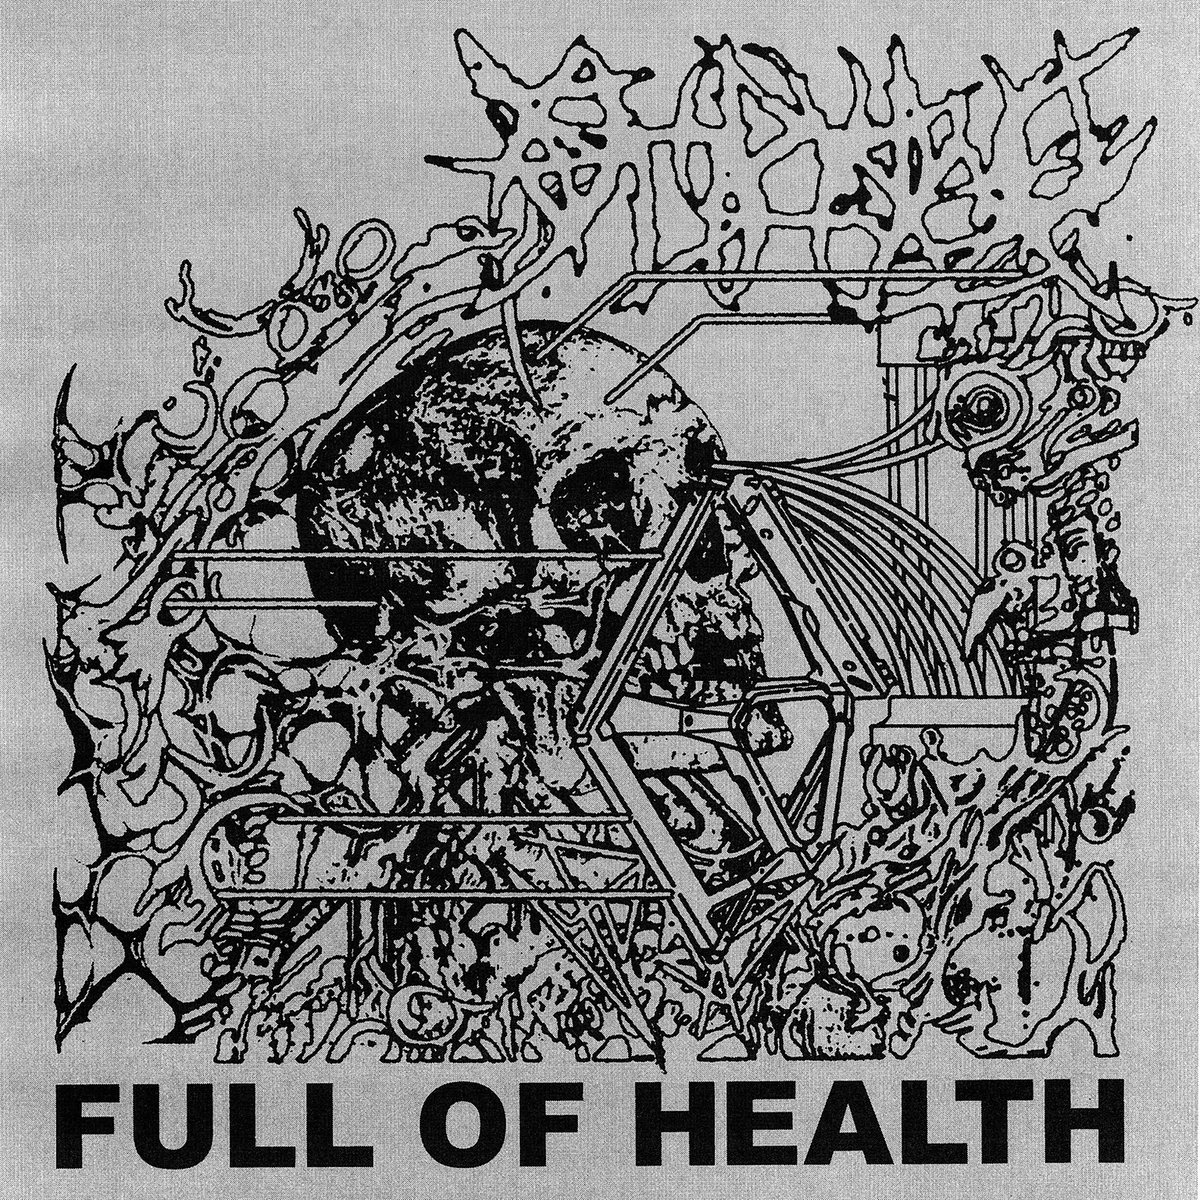 FULL OF HELL - Full Of Health cover 